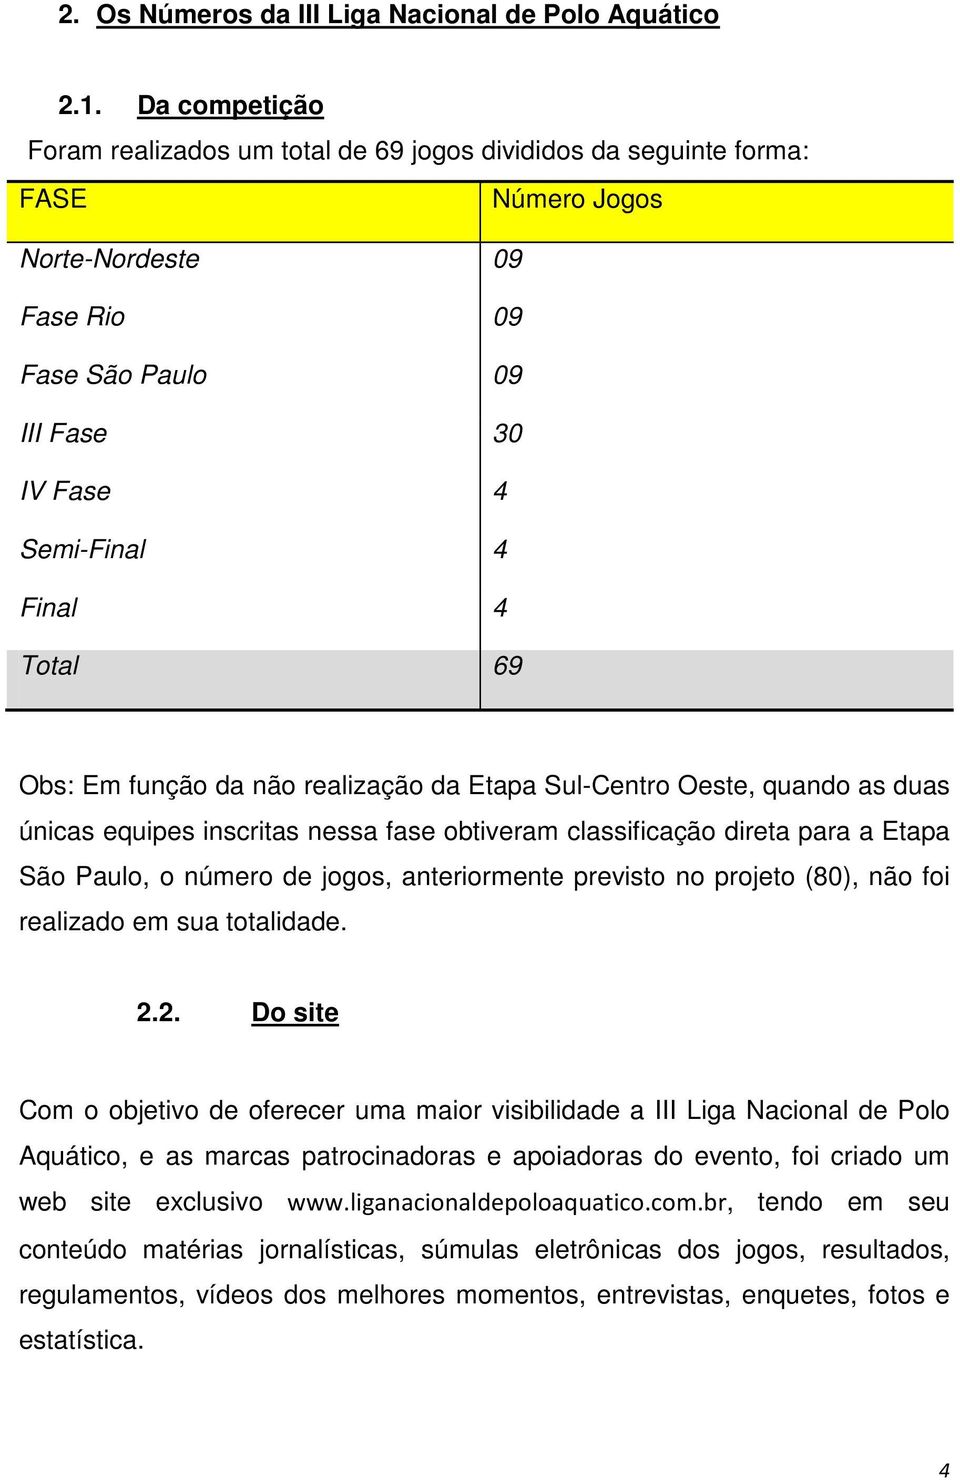 Obs: Em função da não realização da Etapa Sul-Centro Oeste, quando as duas únicas equipes inscritas nessa fase obtiveram classificação direta para a Etapa São Paulo, o número de jogos, anteriormente